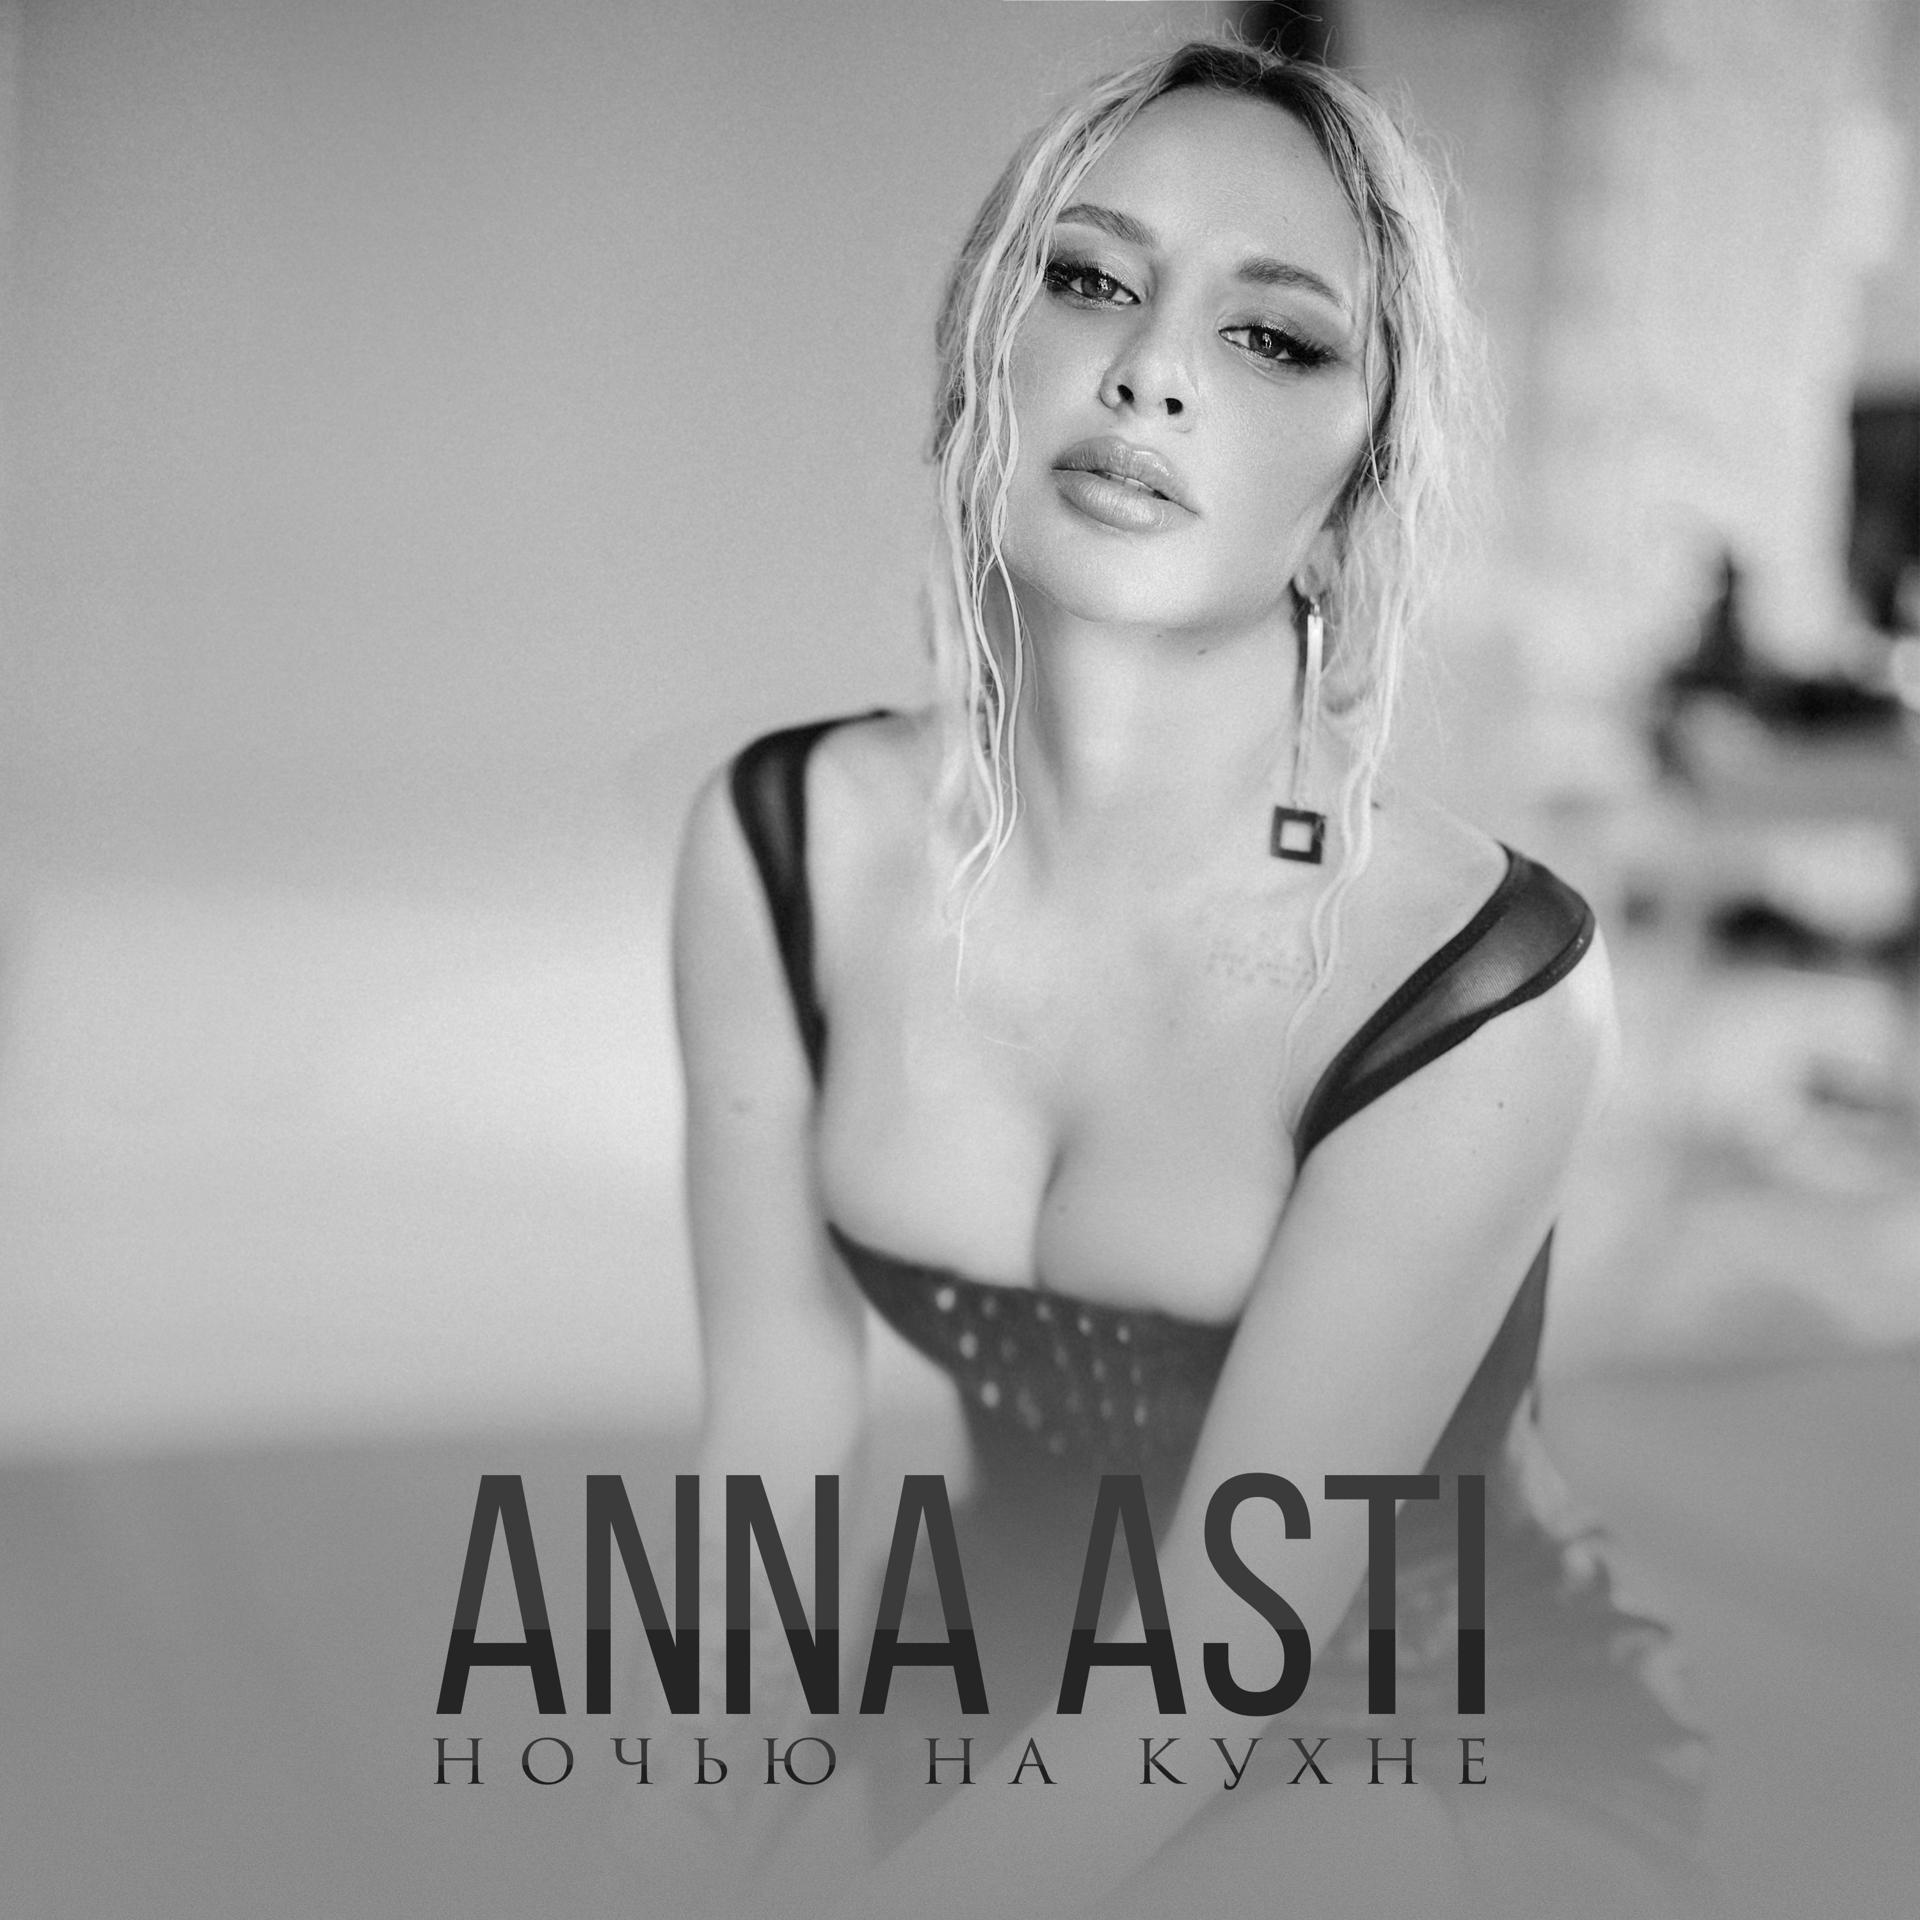 Постер к треку ANNA ASTI - Ночью на кухне